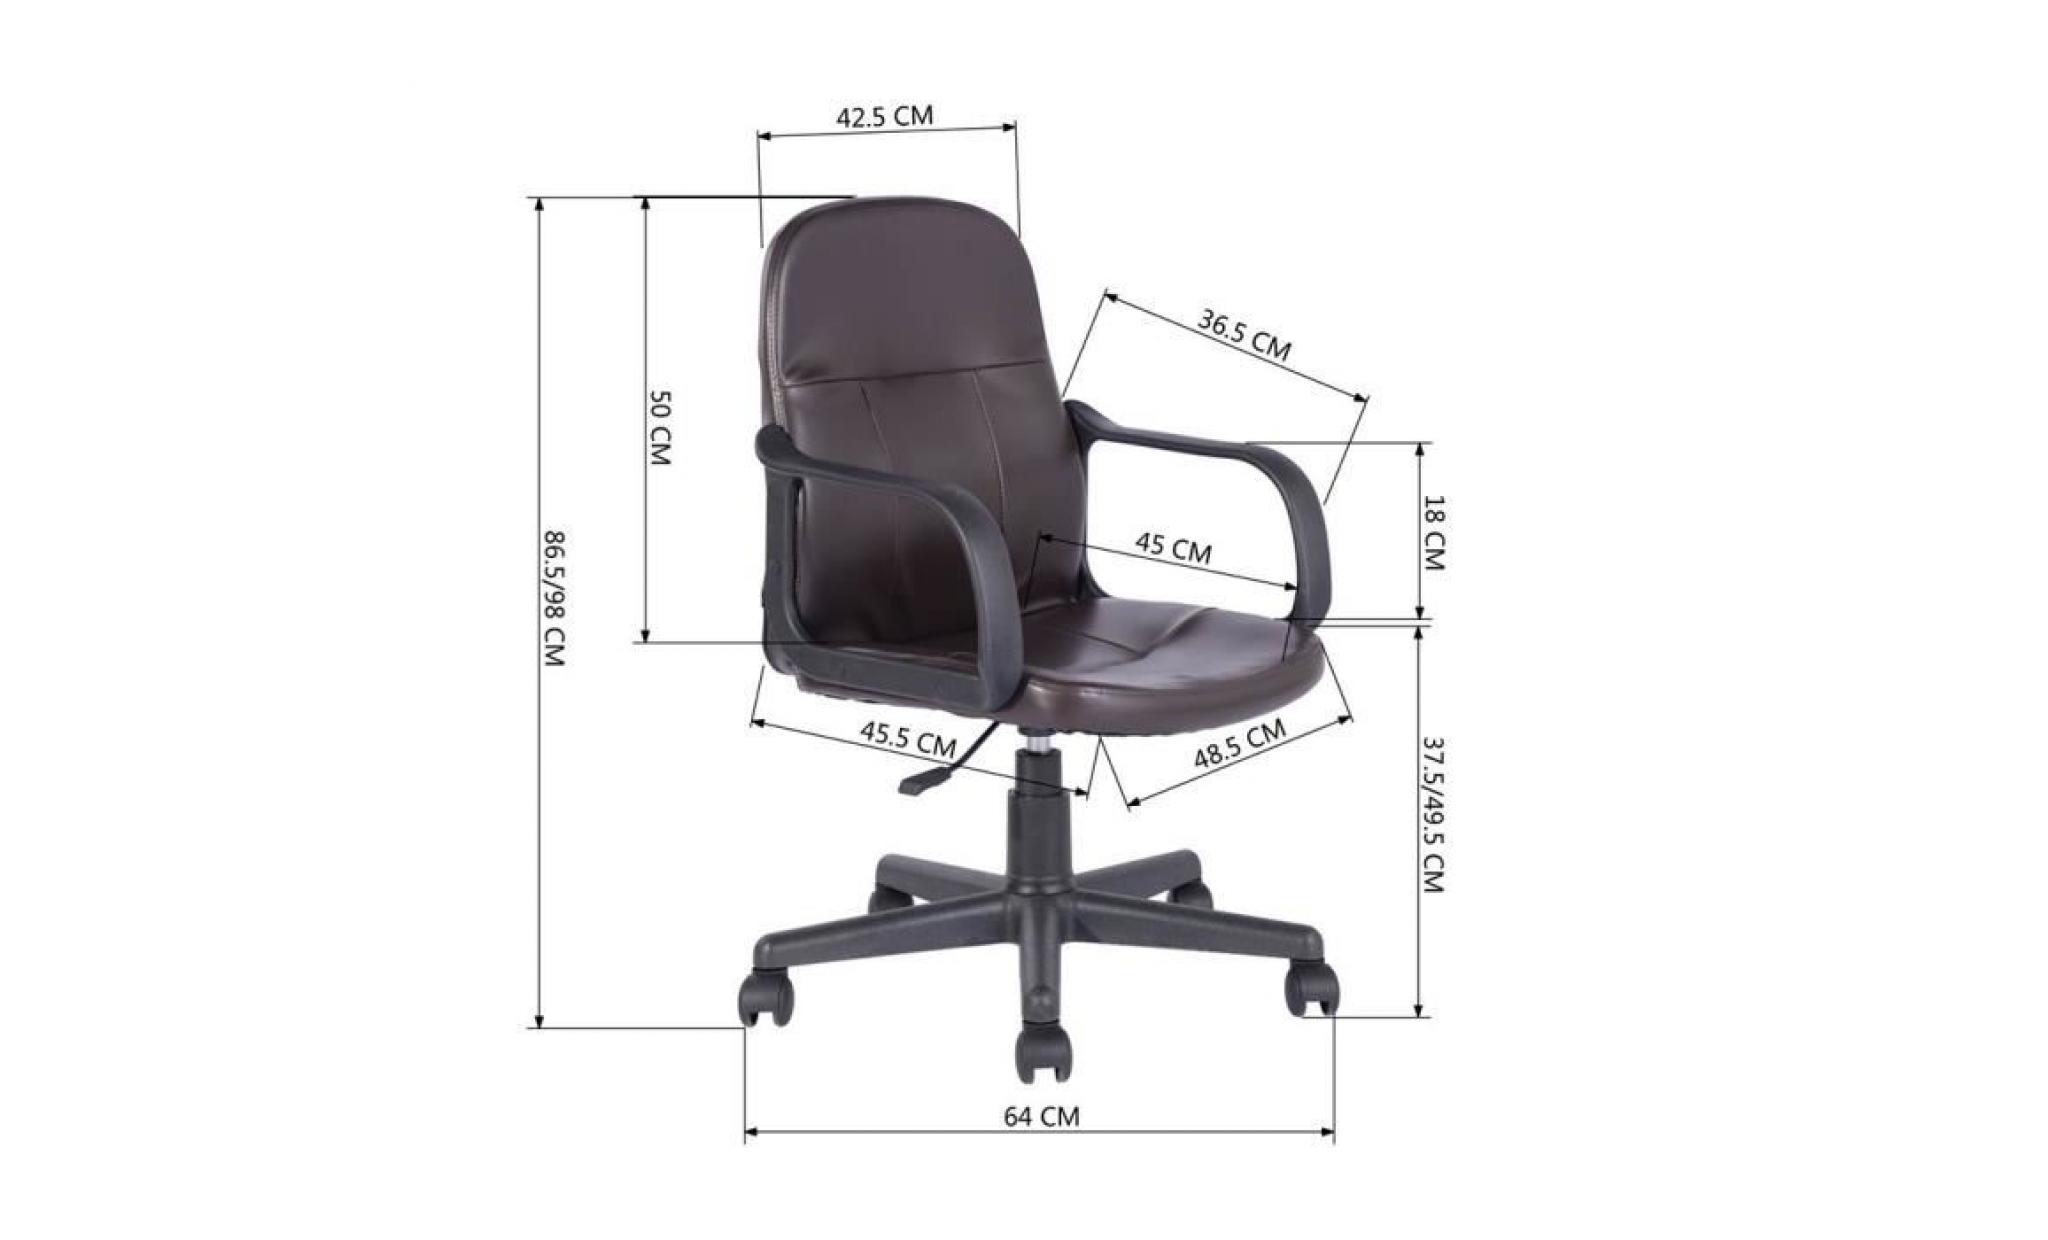 fauteuil de bureau chaise    pvc hauteur réglable roulettes pivotantes    marron    57x56x87 97cm pas cher